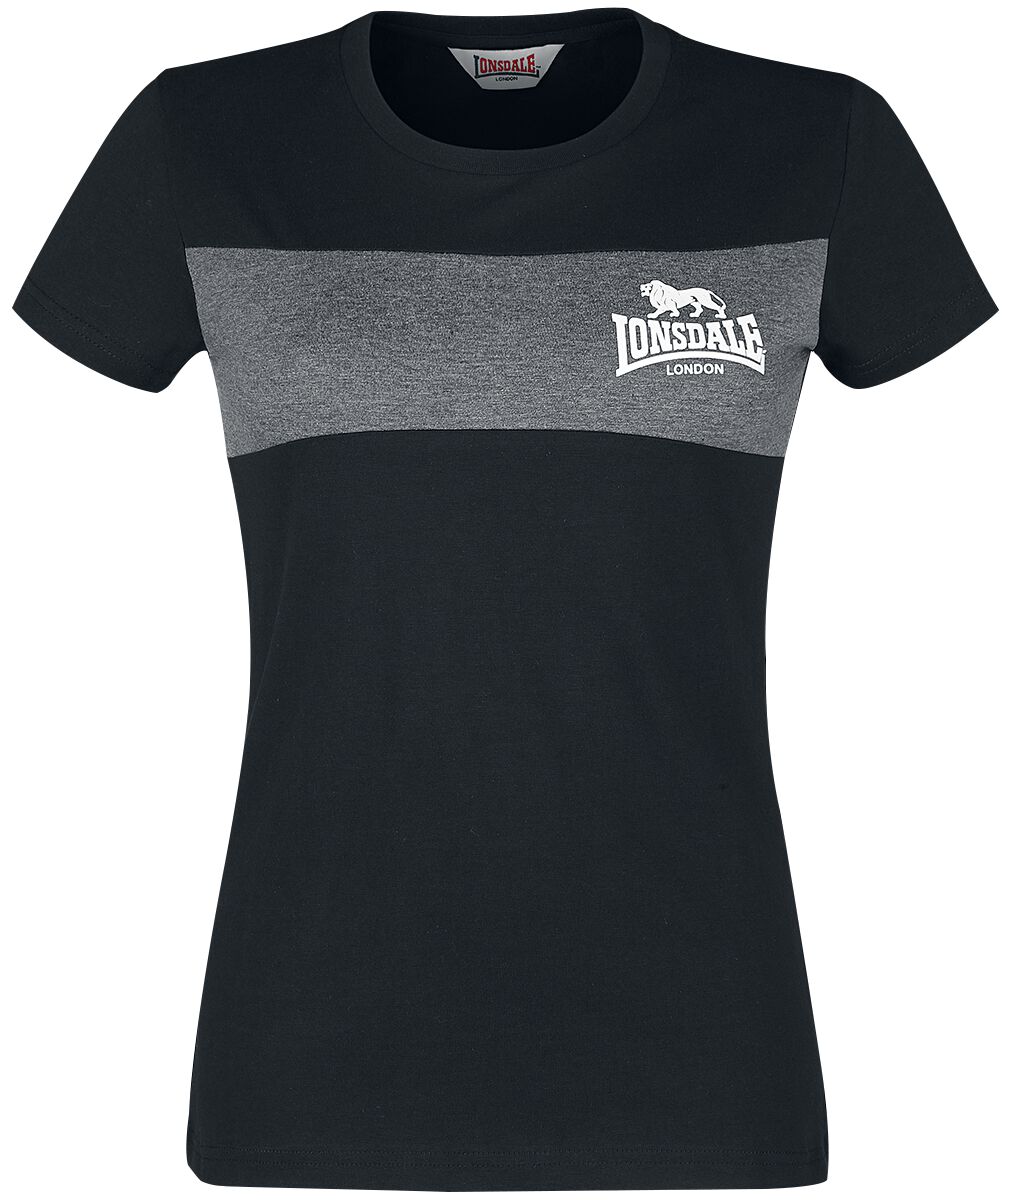 Lonsdale London T-Shirt - Dawsmere - XS bis 3XL - für Damen - Größe S - schwarz